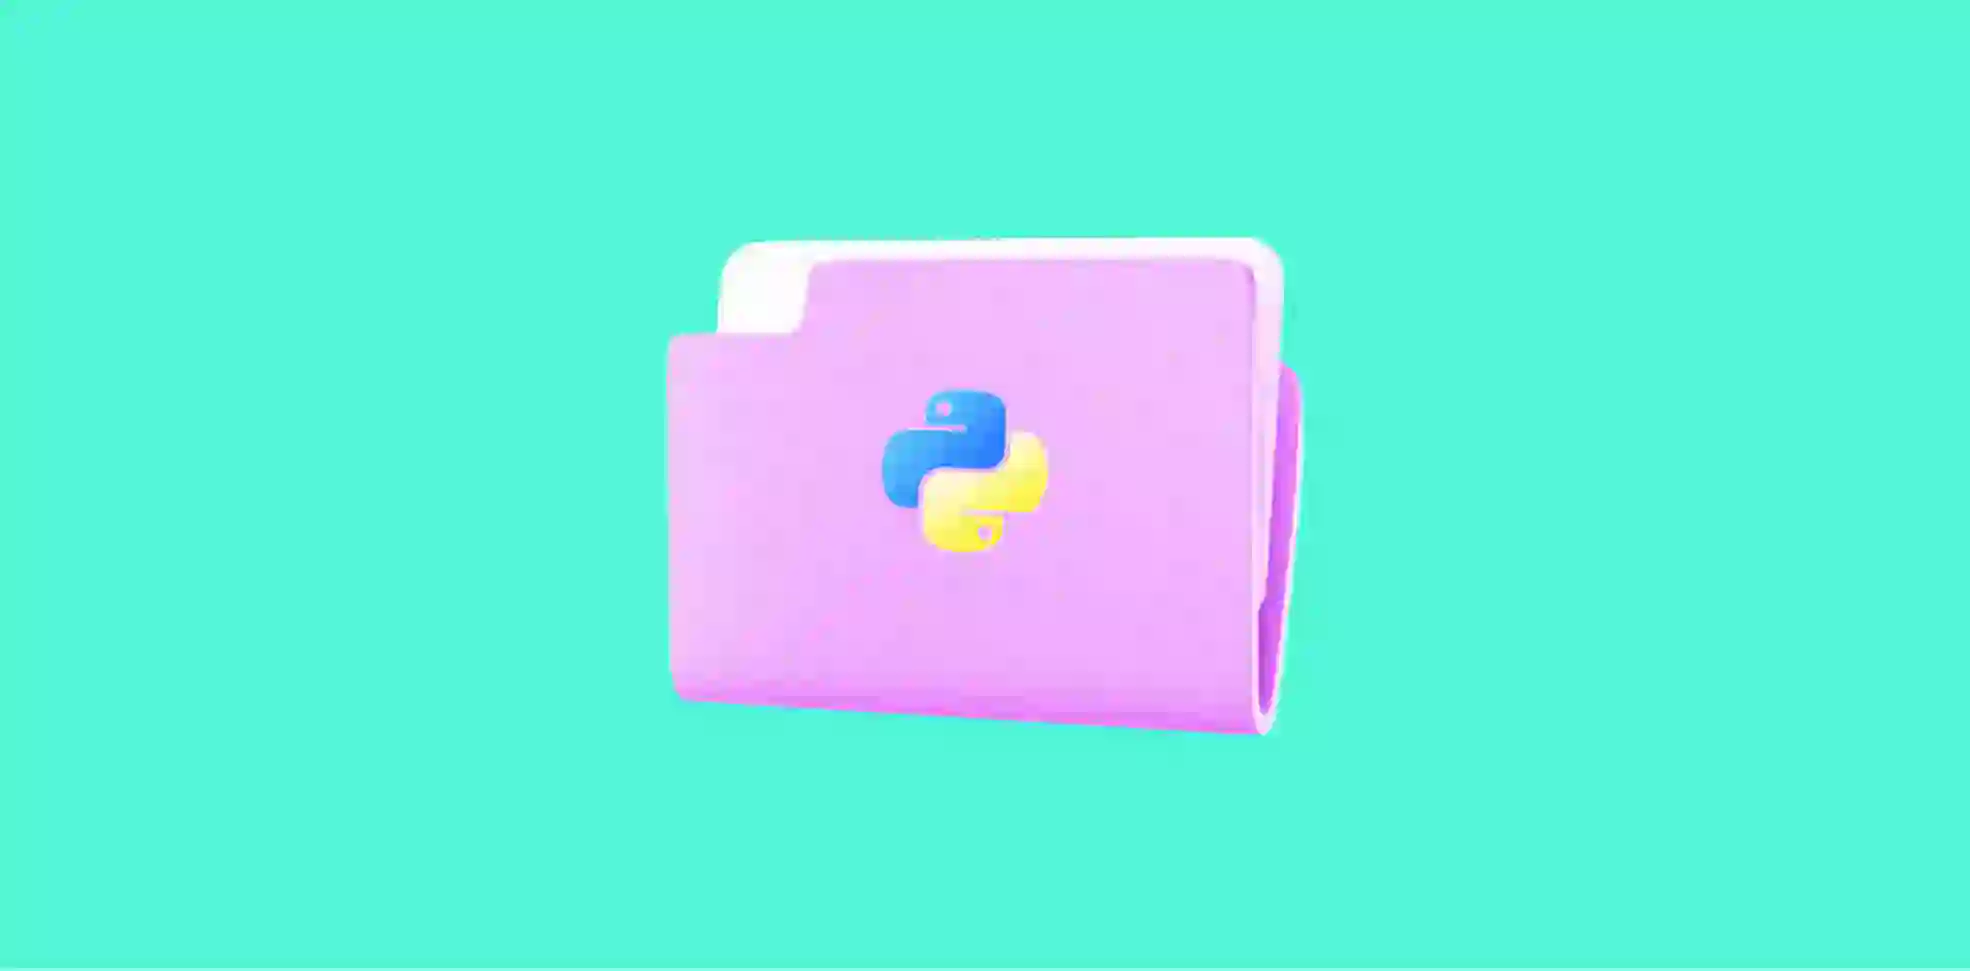 python logo on a purple folder on a green background